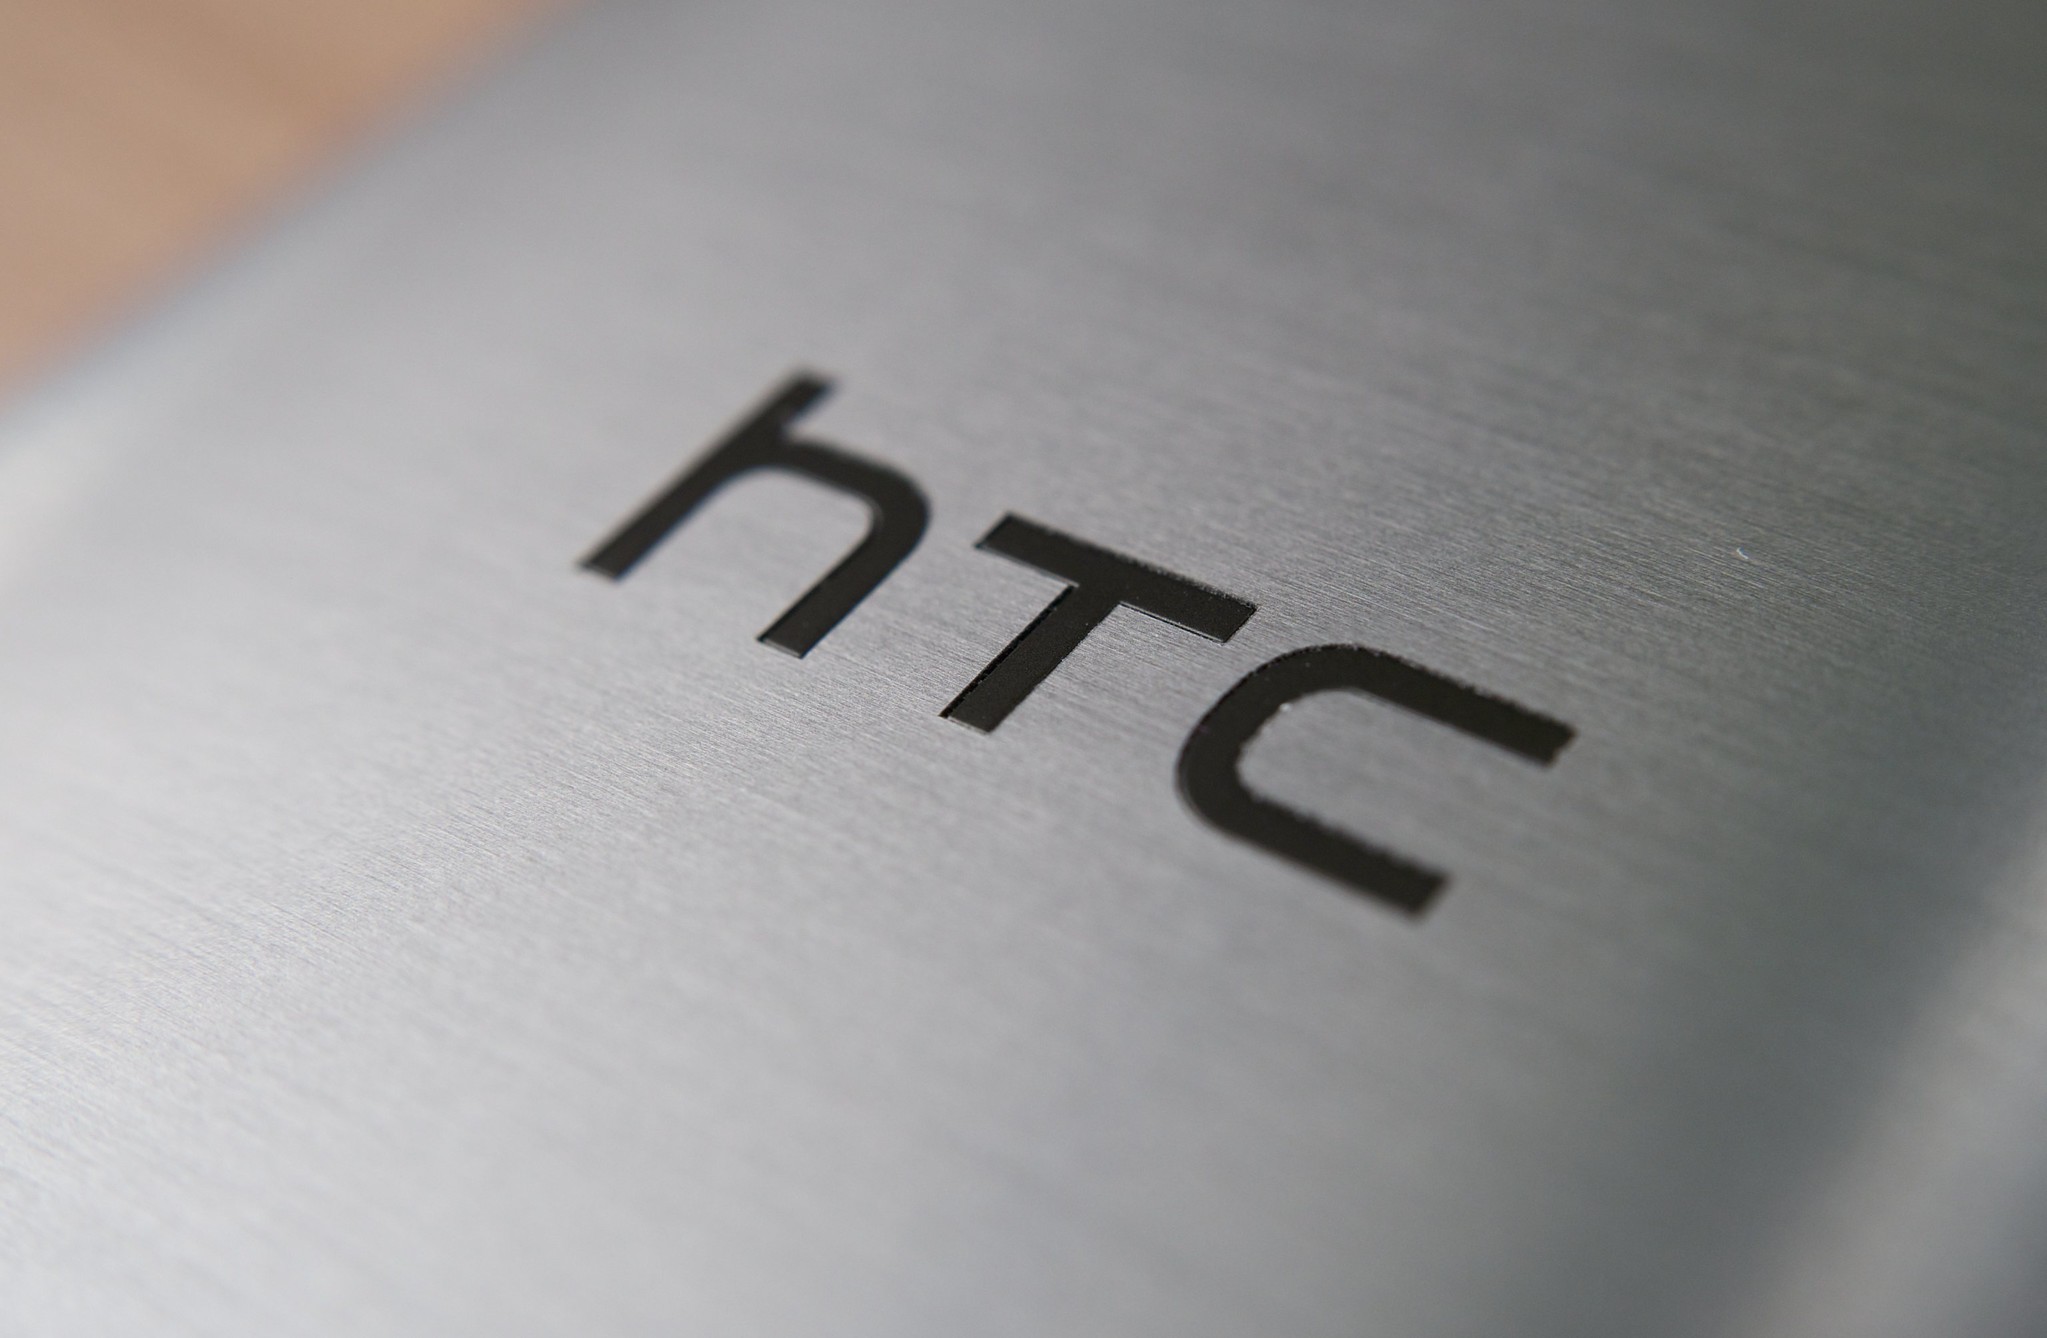 Oversigt over smartphonen HTC Wildfire R70 med nøglefunktioner